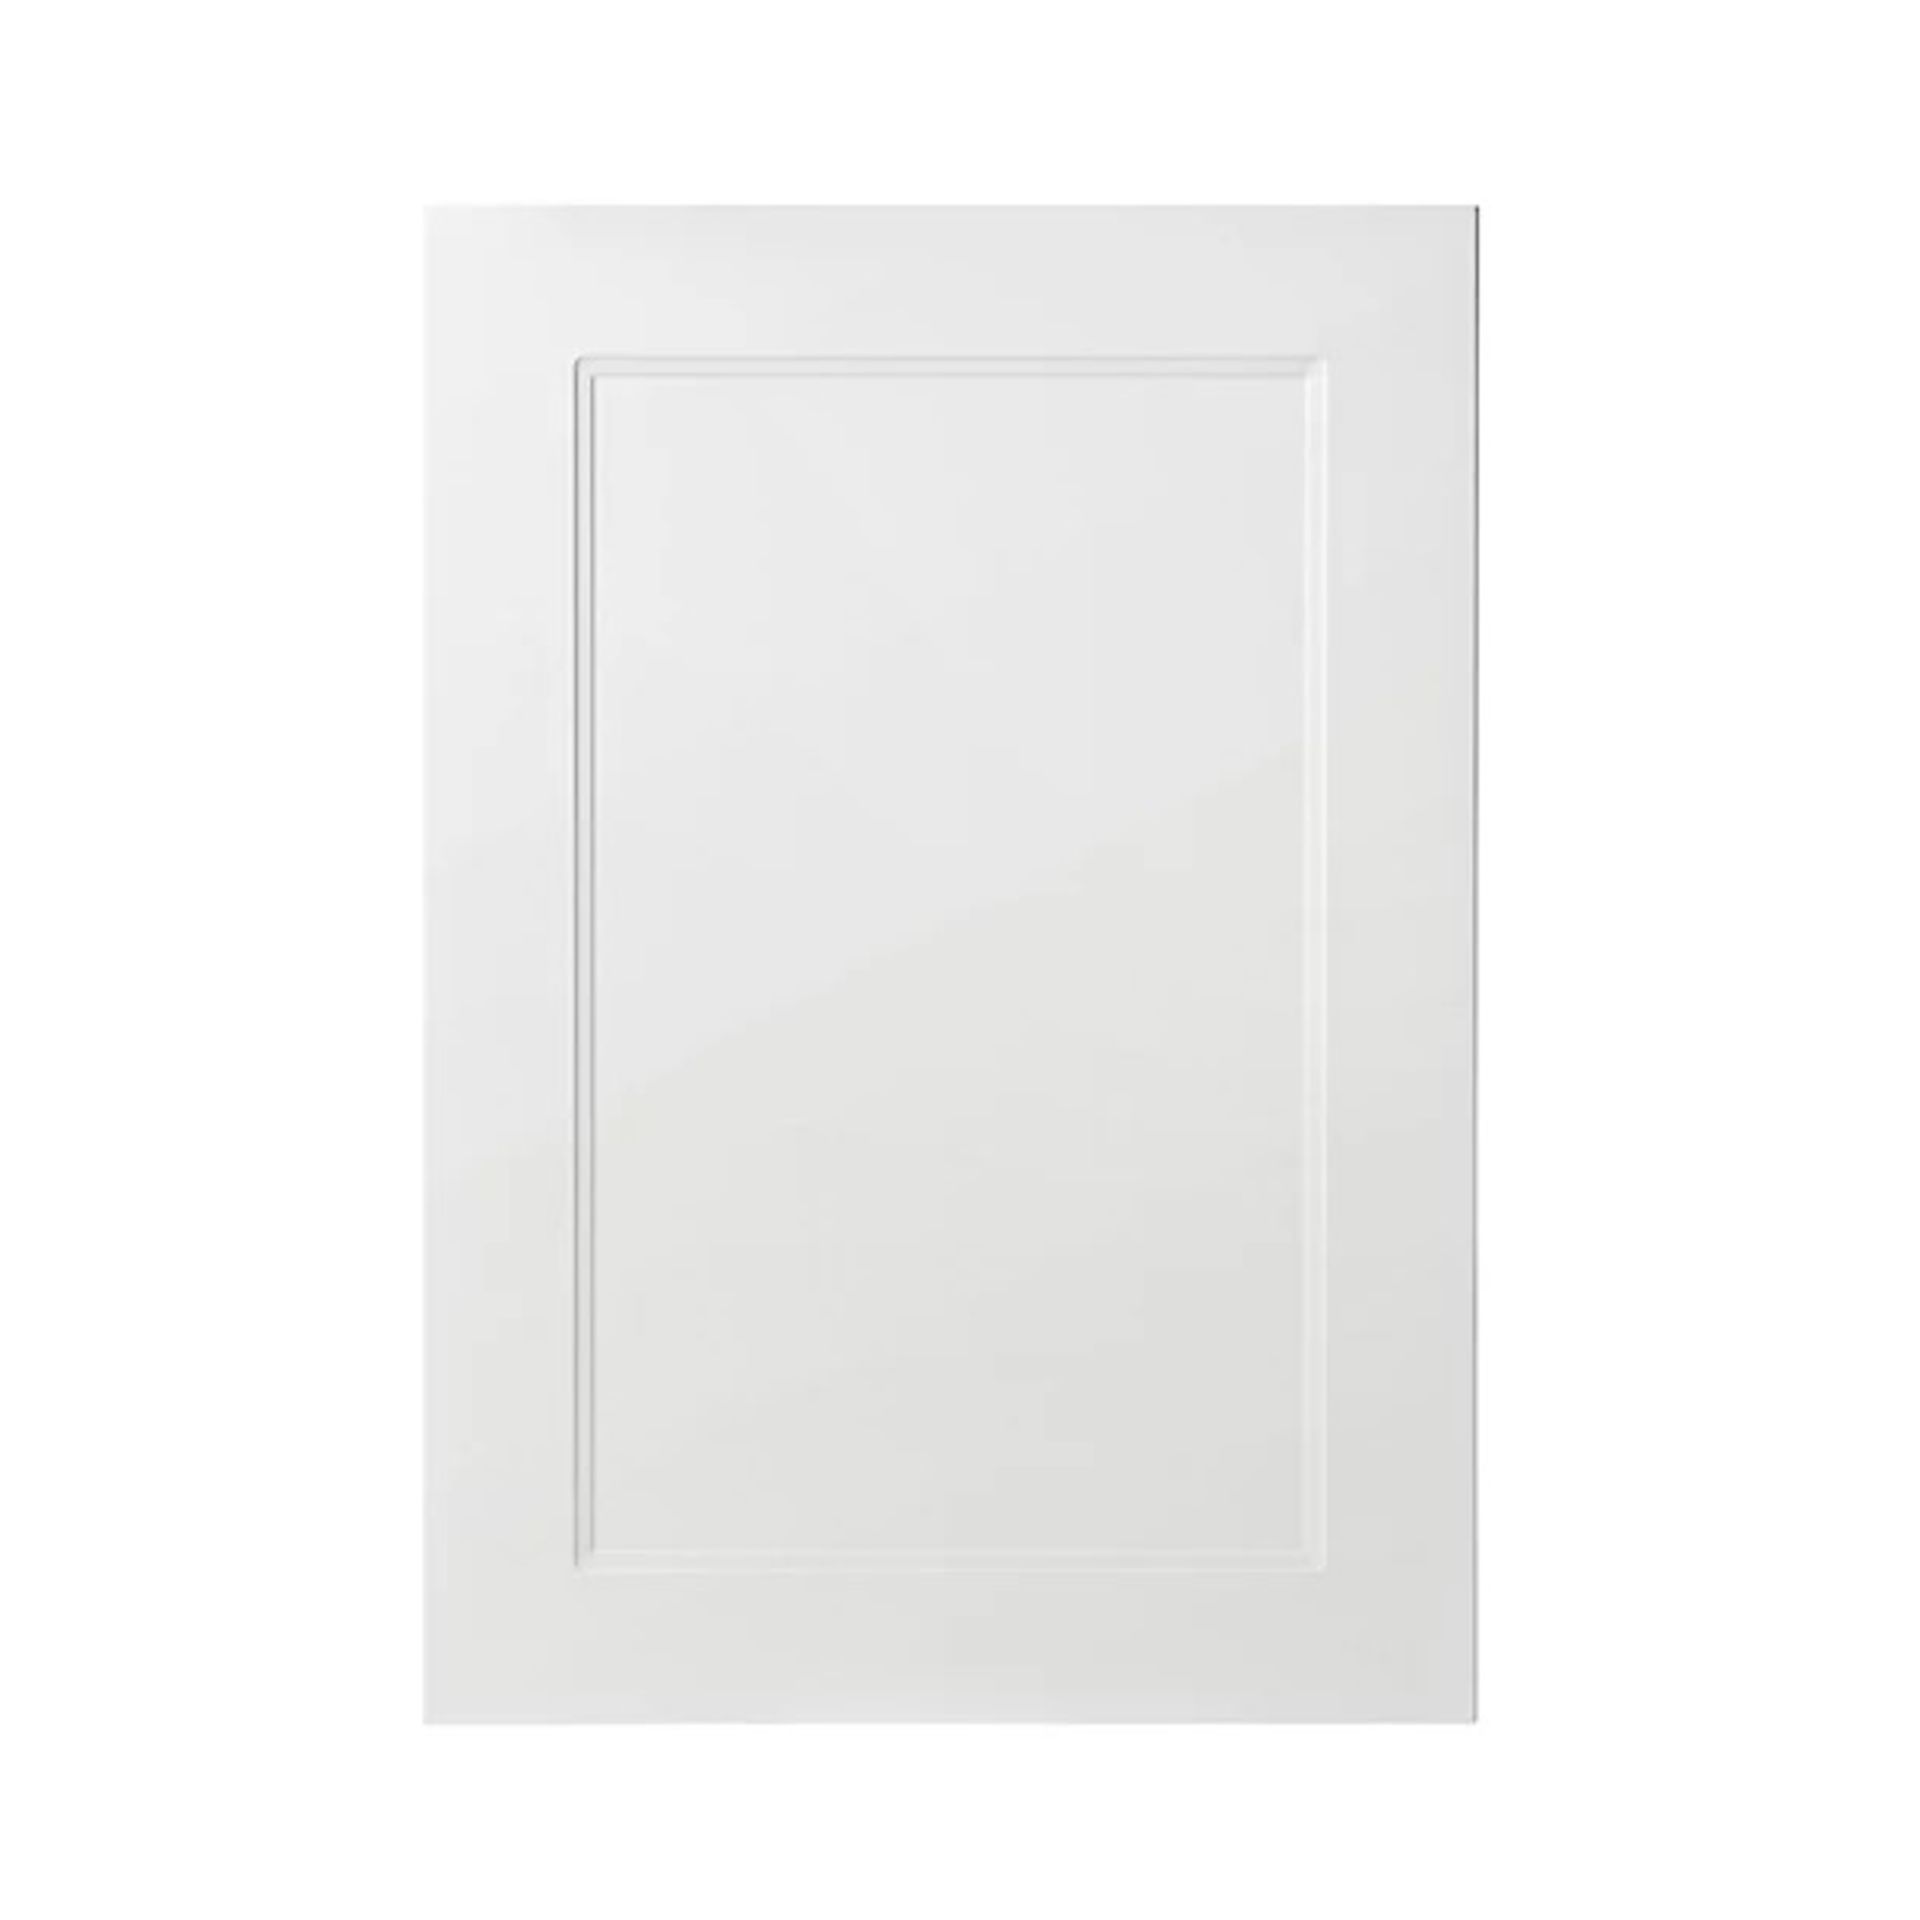 GoodHome Artemisia Matt white classic shaker Highline Cabinet door (W)600mm (H)715mm (T)18mm - Er45